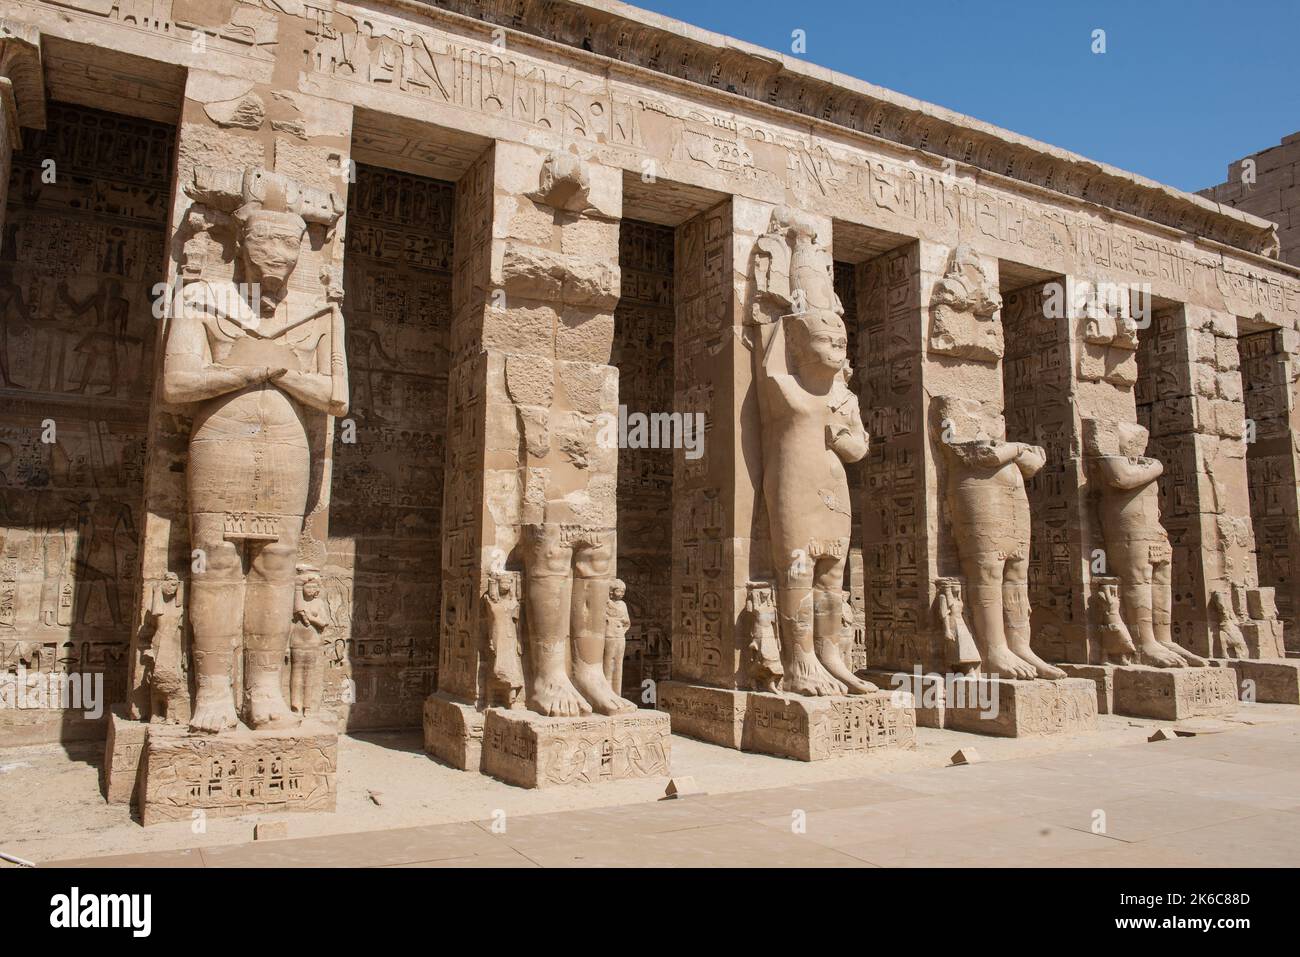 Grandes statues de Ramses II dans l'ancien Temple égyptien Medinat Habu avec des colonnes dans la cour Banque D'Images